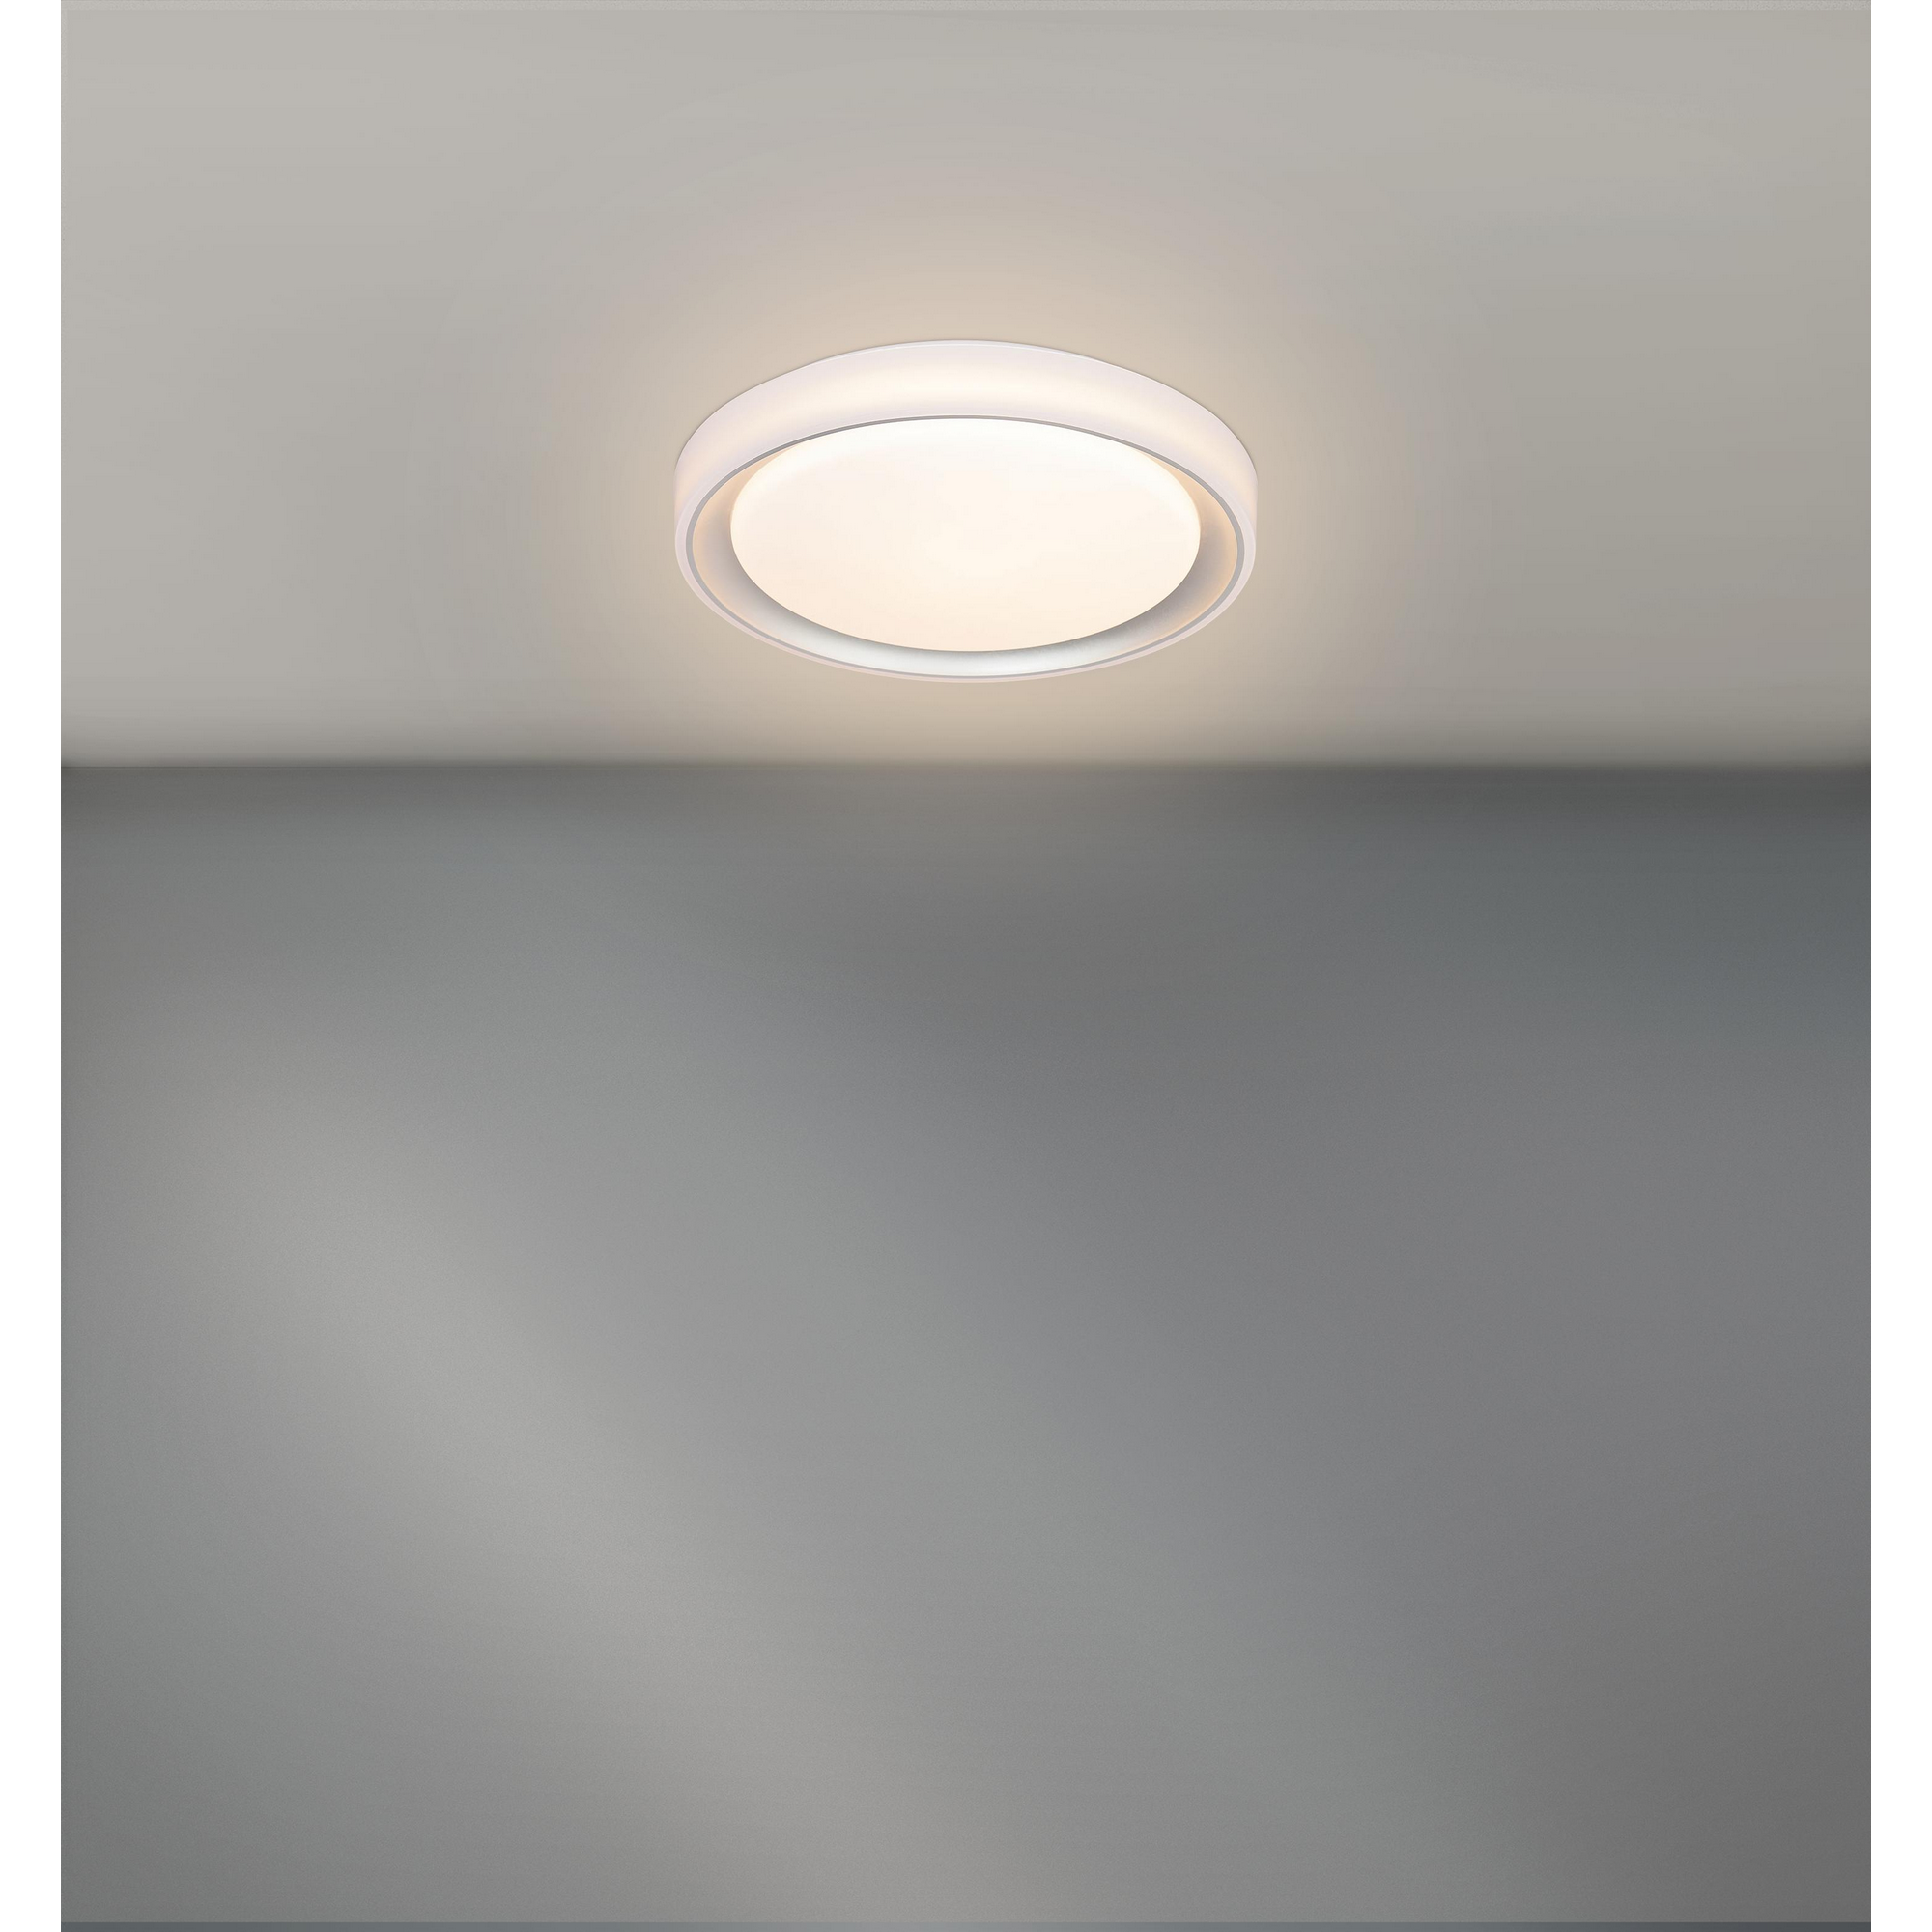 LED-Deckenleuchte Kunststoff weiß/silber 2600 lm, Fernbedienung Ø 40 x 7,5 cm + product picture